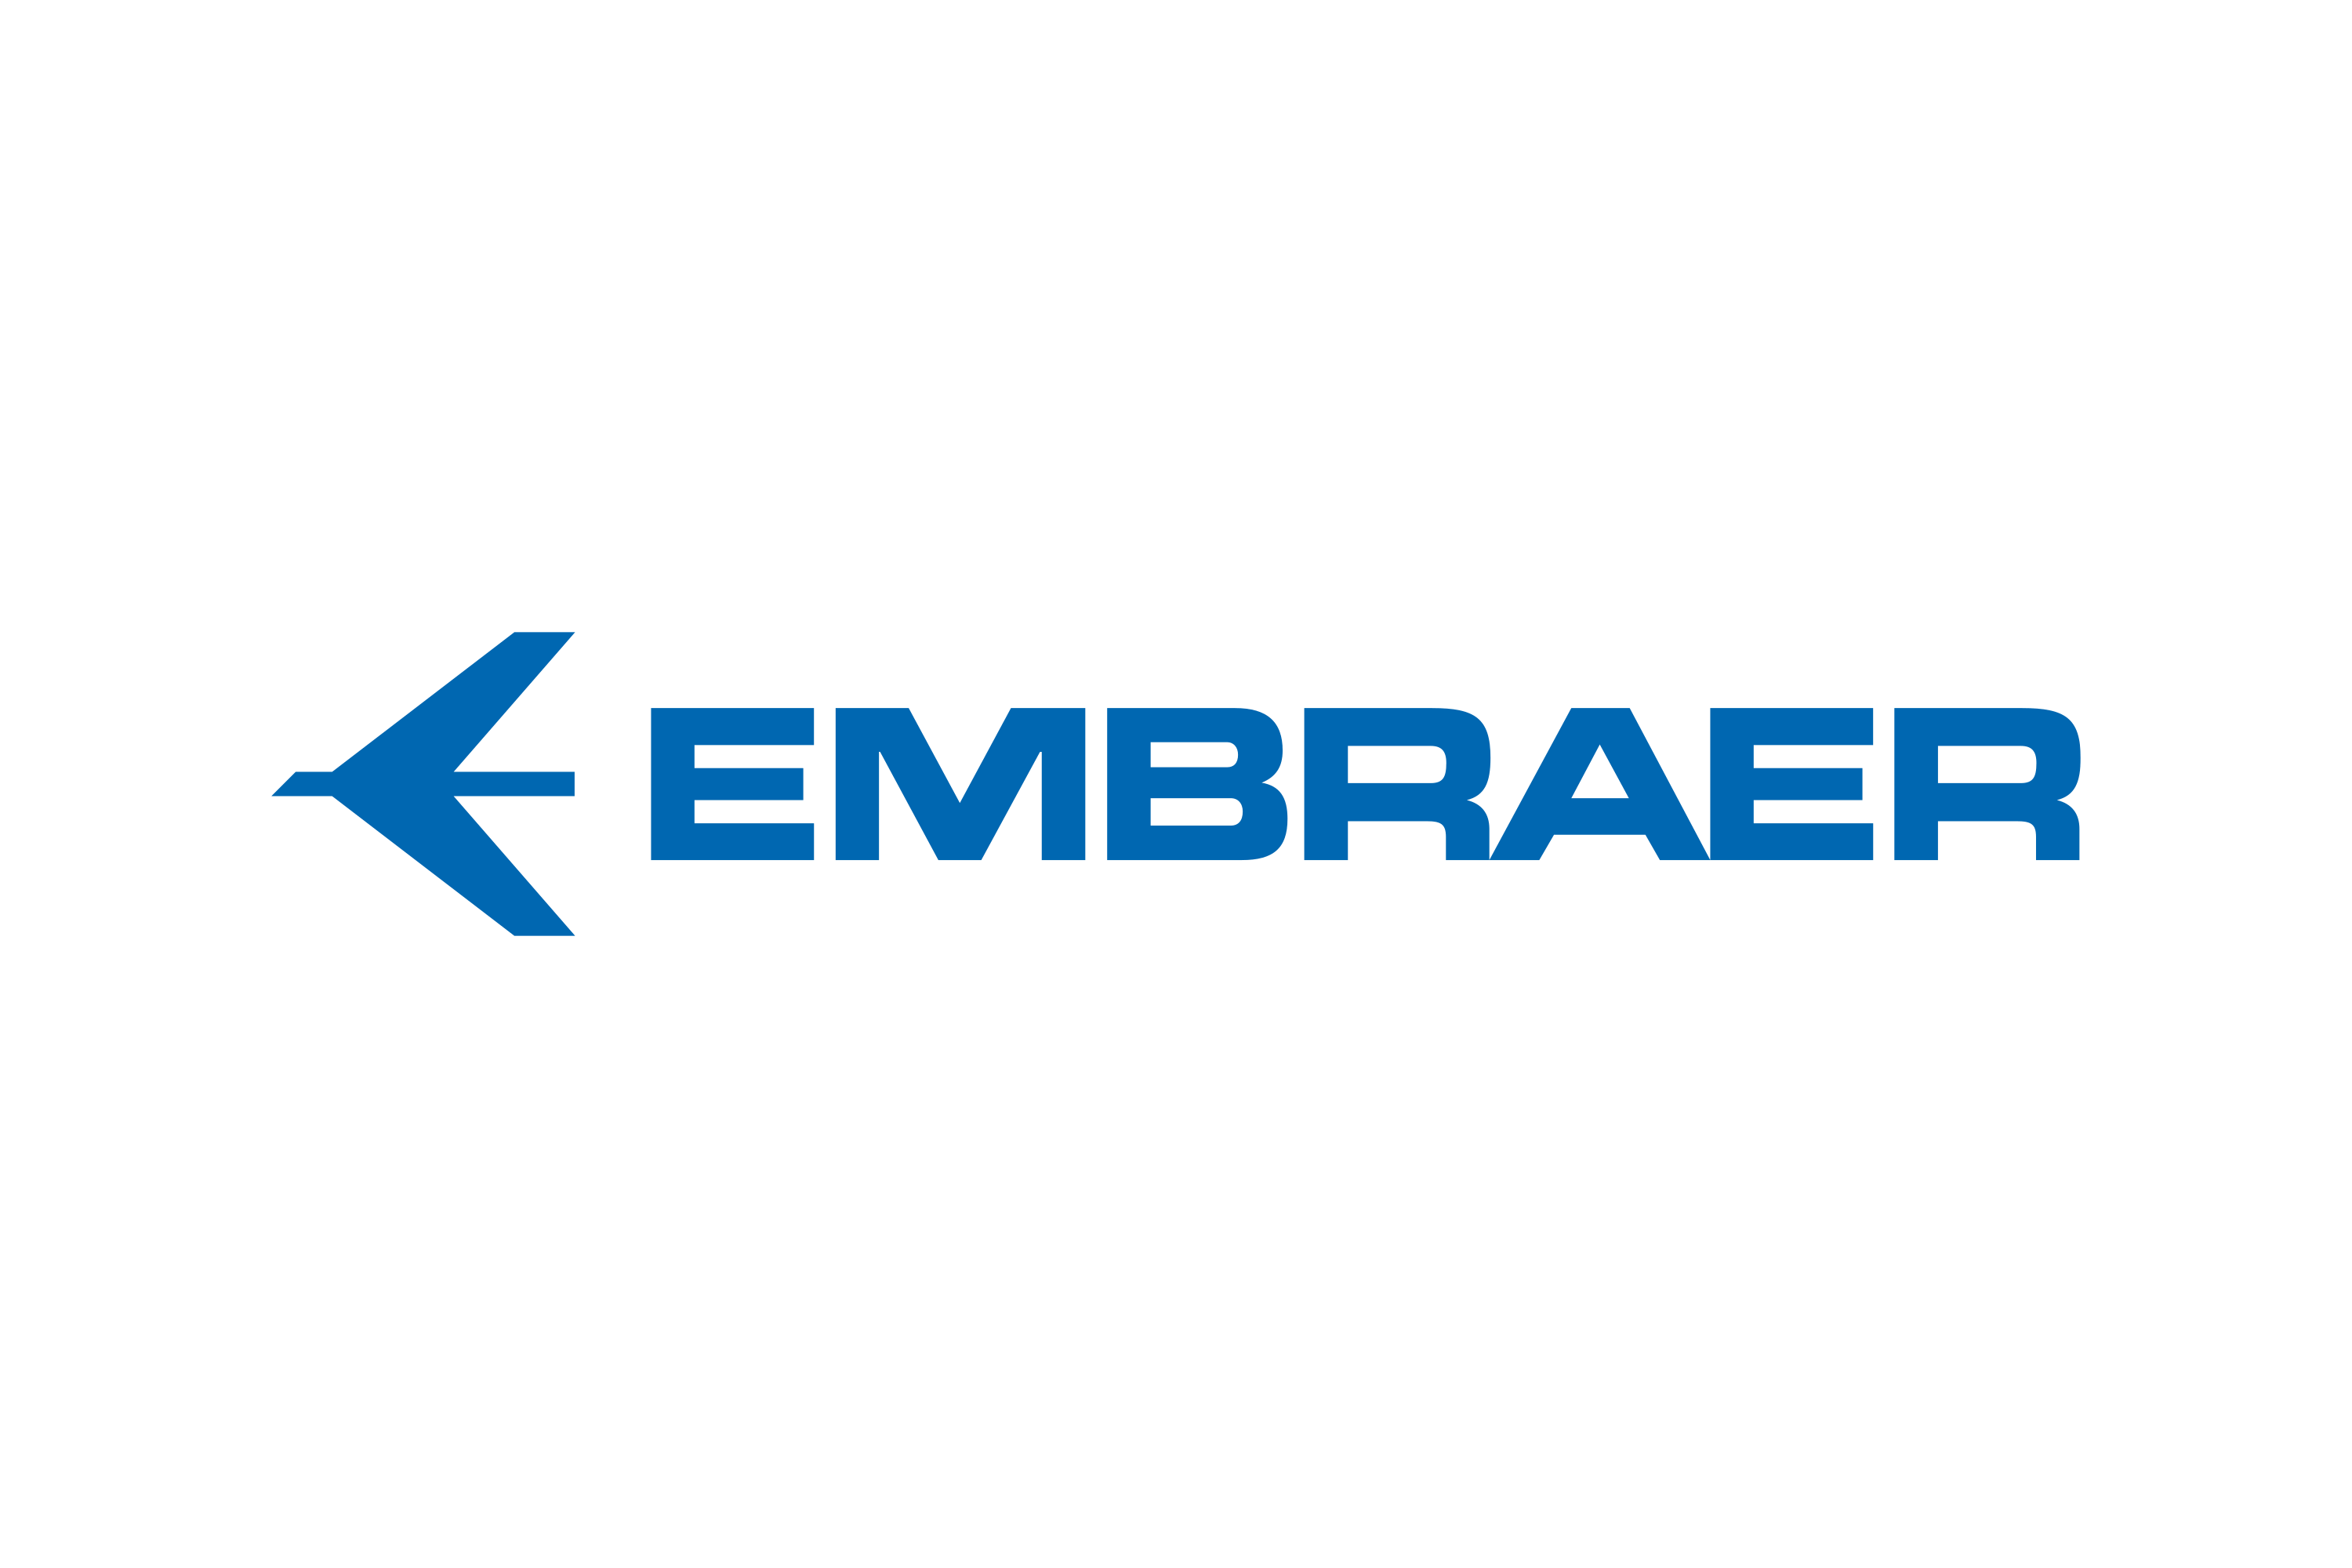 Download Embraer Logo in SVG Vector or PNG File Format - Logo.wine